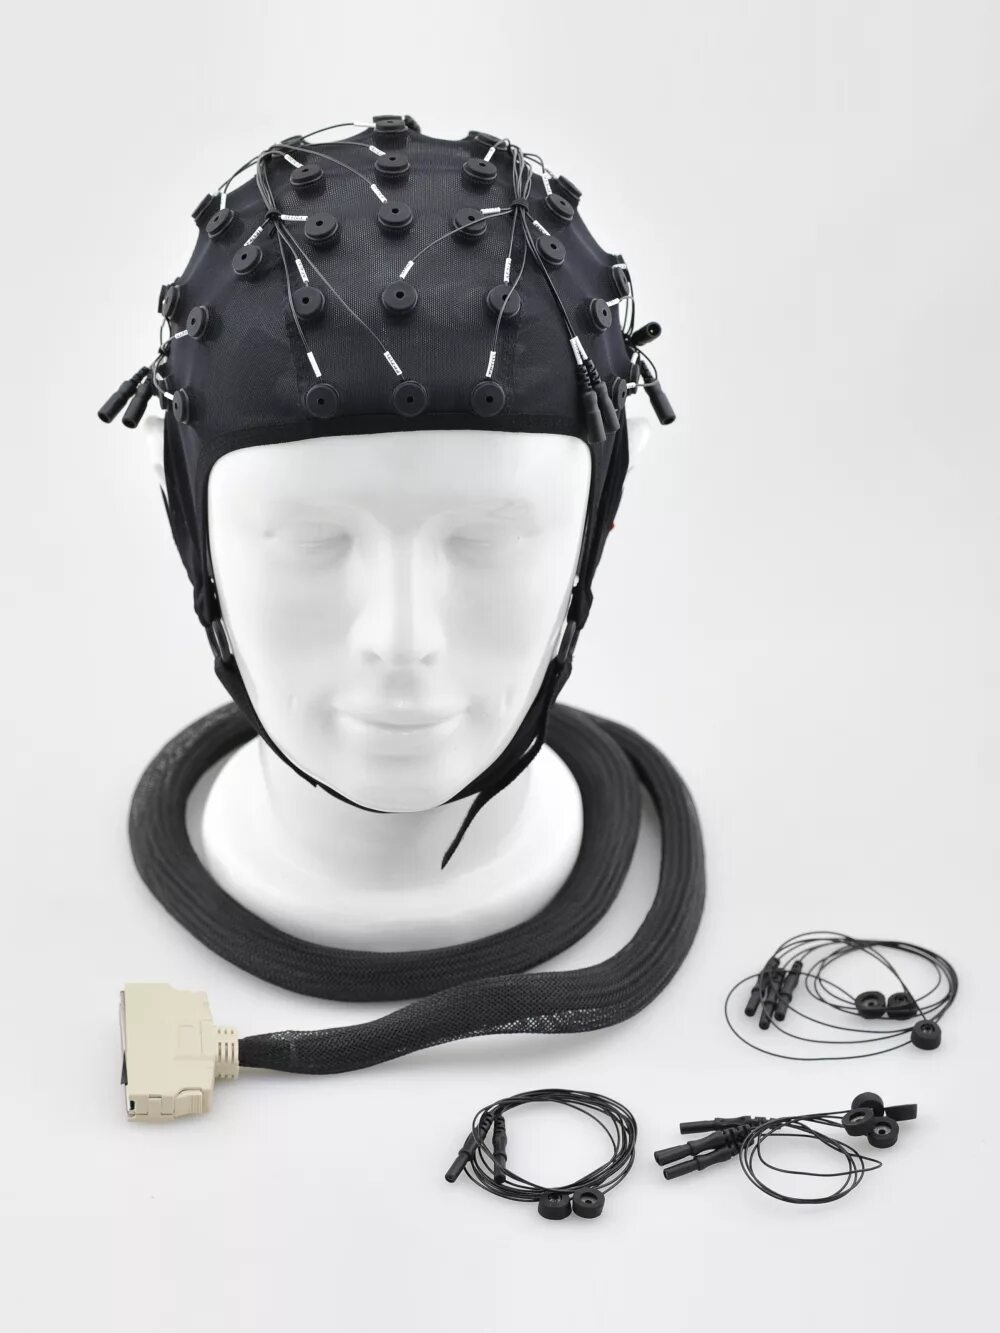 Ээг мозга цена. Электроэнцефалограф Air-EEG. EEG elektroentsefalografiya. РЭГ И ЭЭГ. Шапка для EEG-1200k.